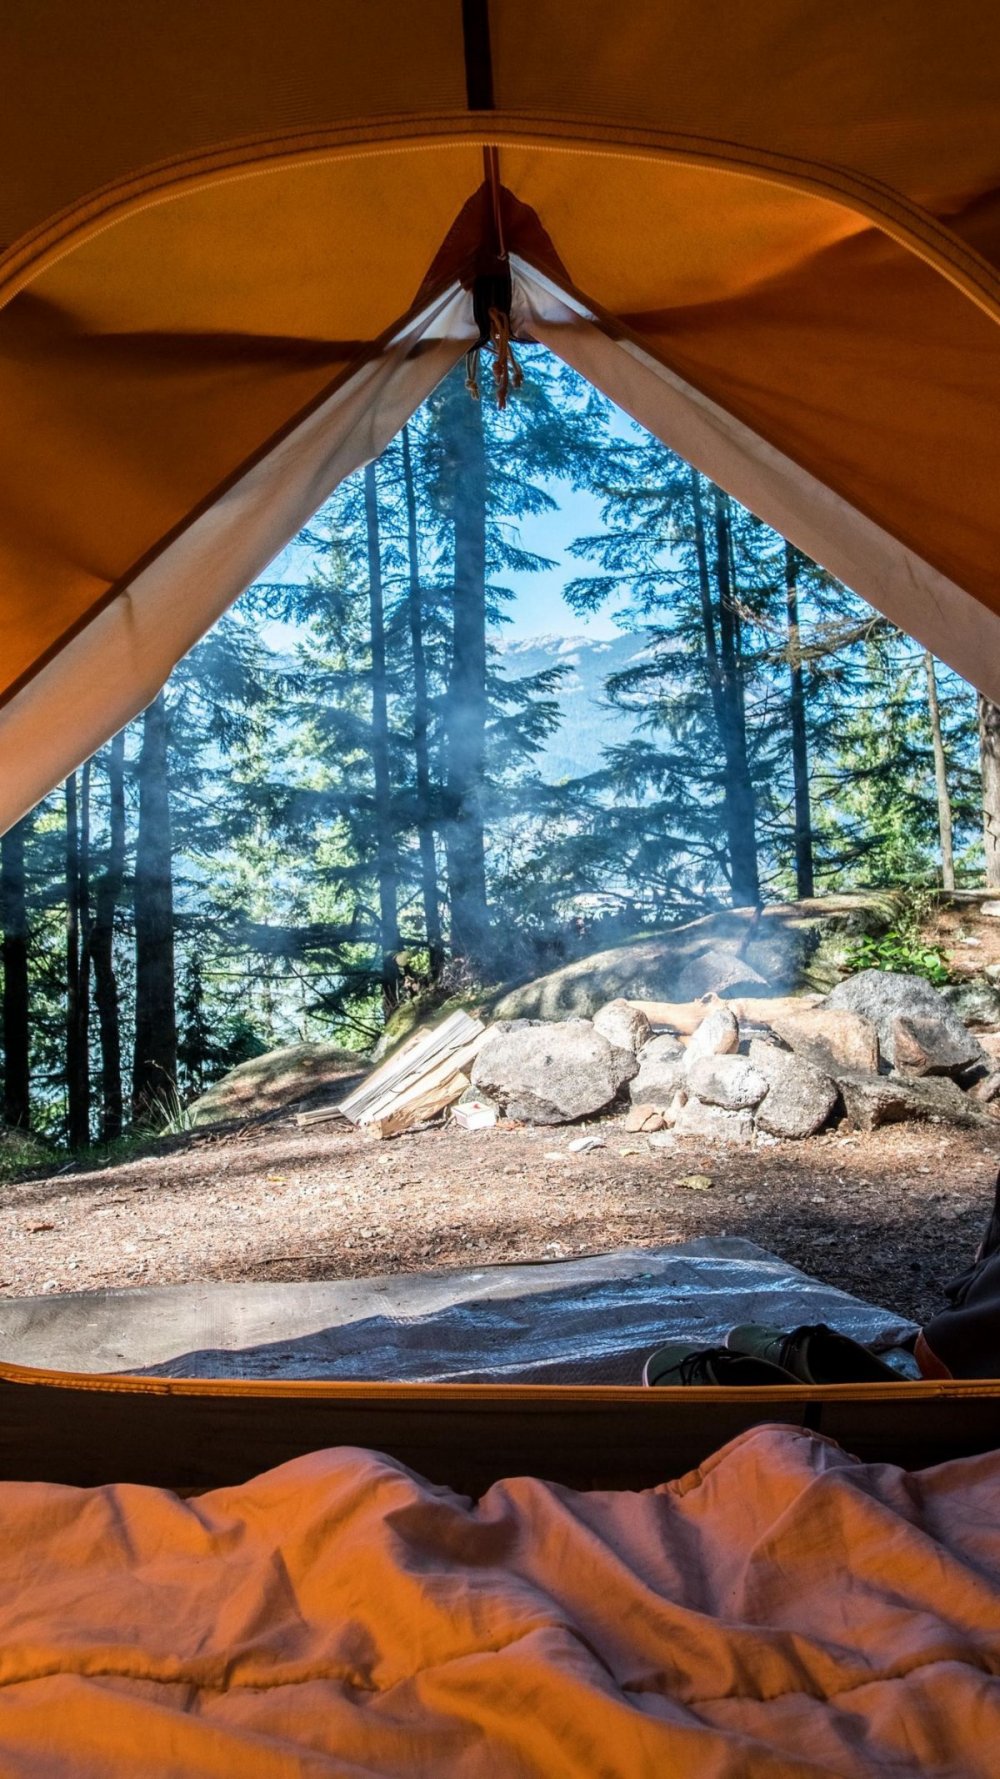 Гузерипль палаточный лагерь